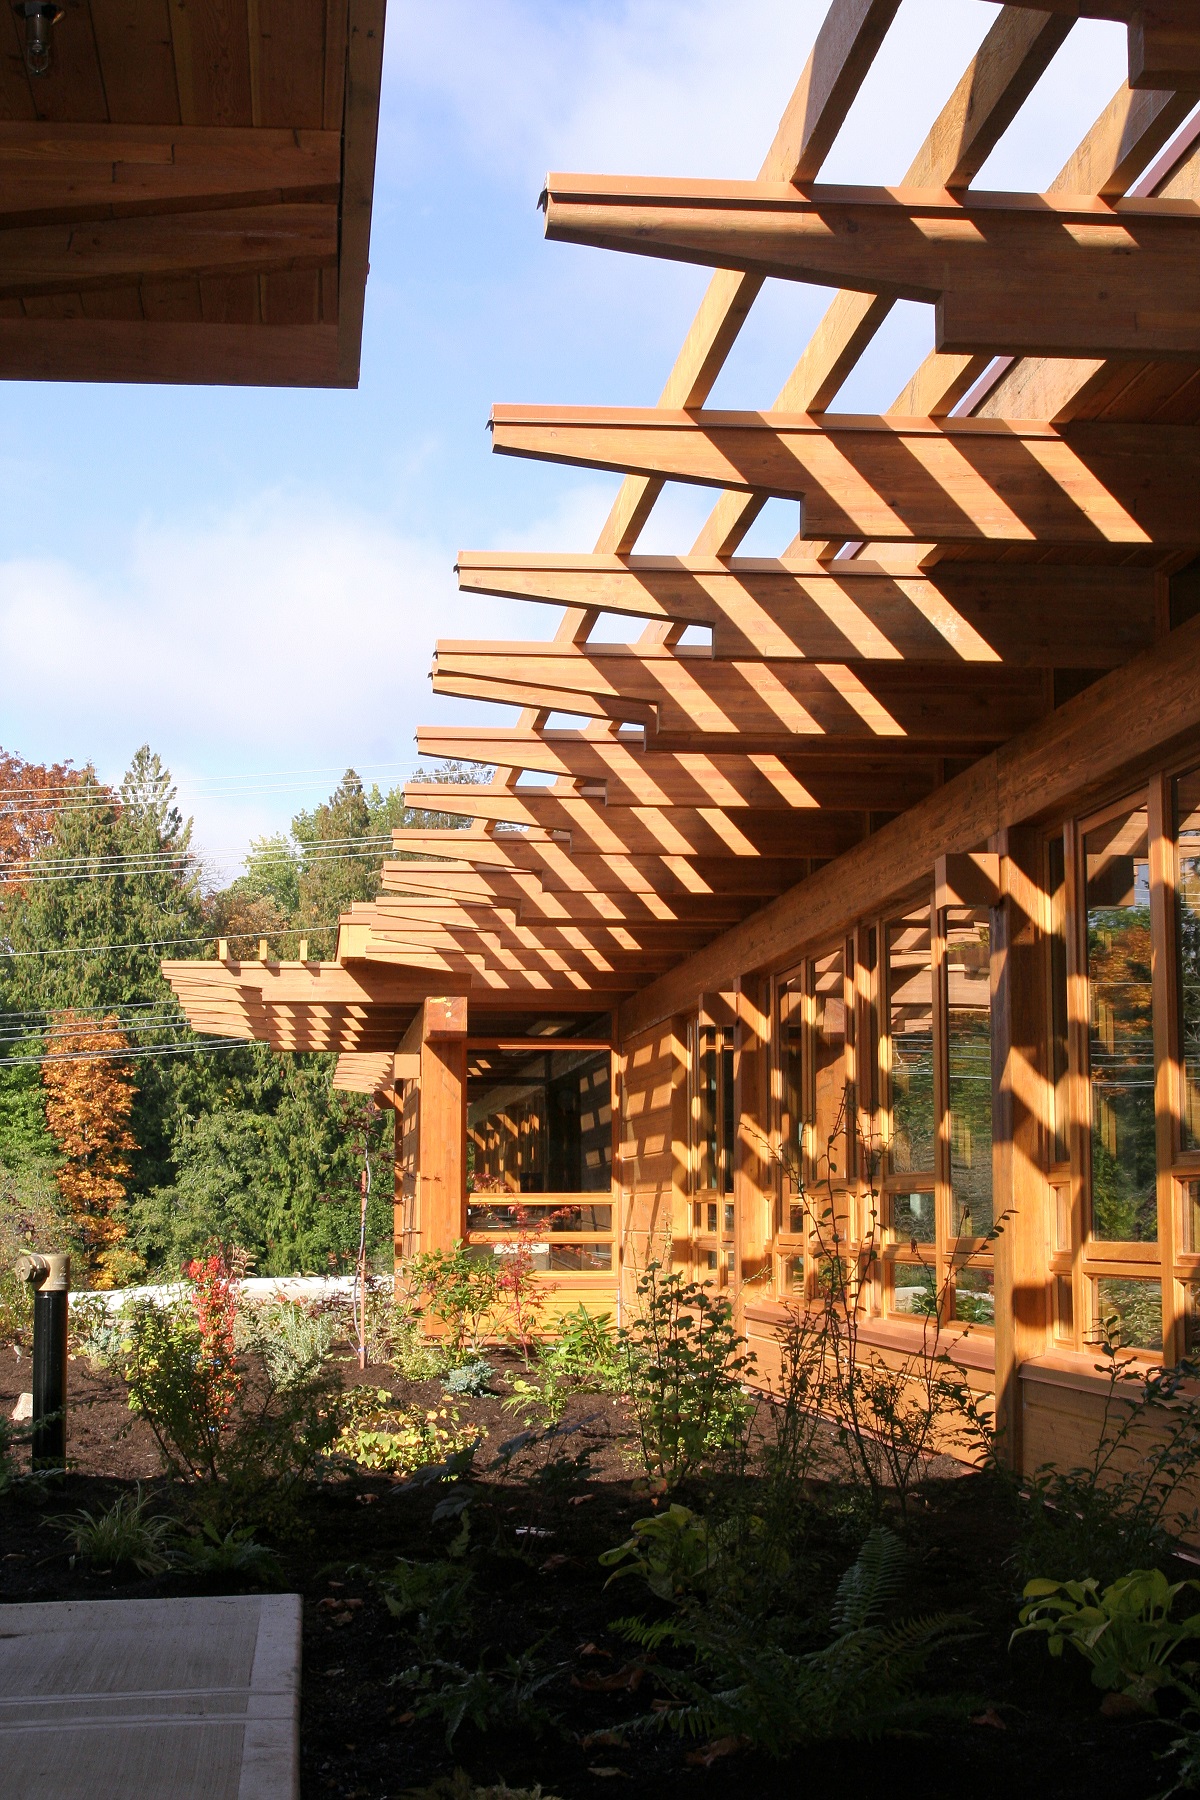 胶合层压木材(胶合木)、木制品、镶板和壁板都展示在Tseshaht部落综合体和健康中心的阳光外部图像中，突出了窗户装饰、屋顶桁架、屋檐等大量使用的外部木材